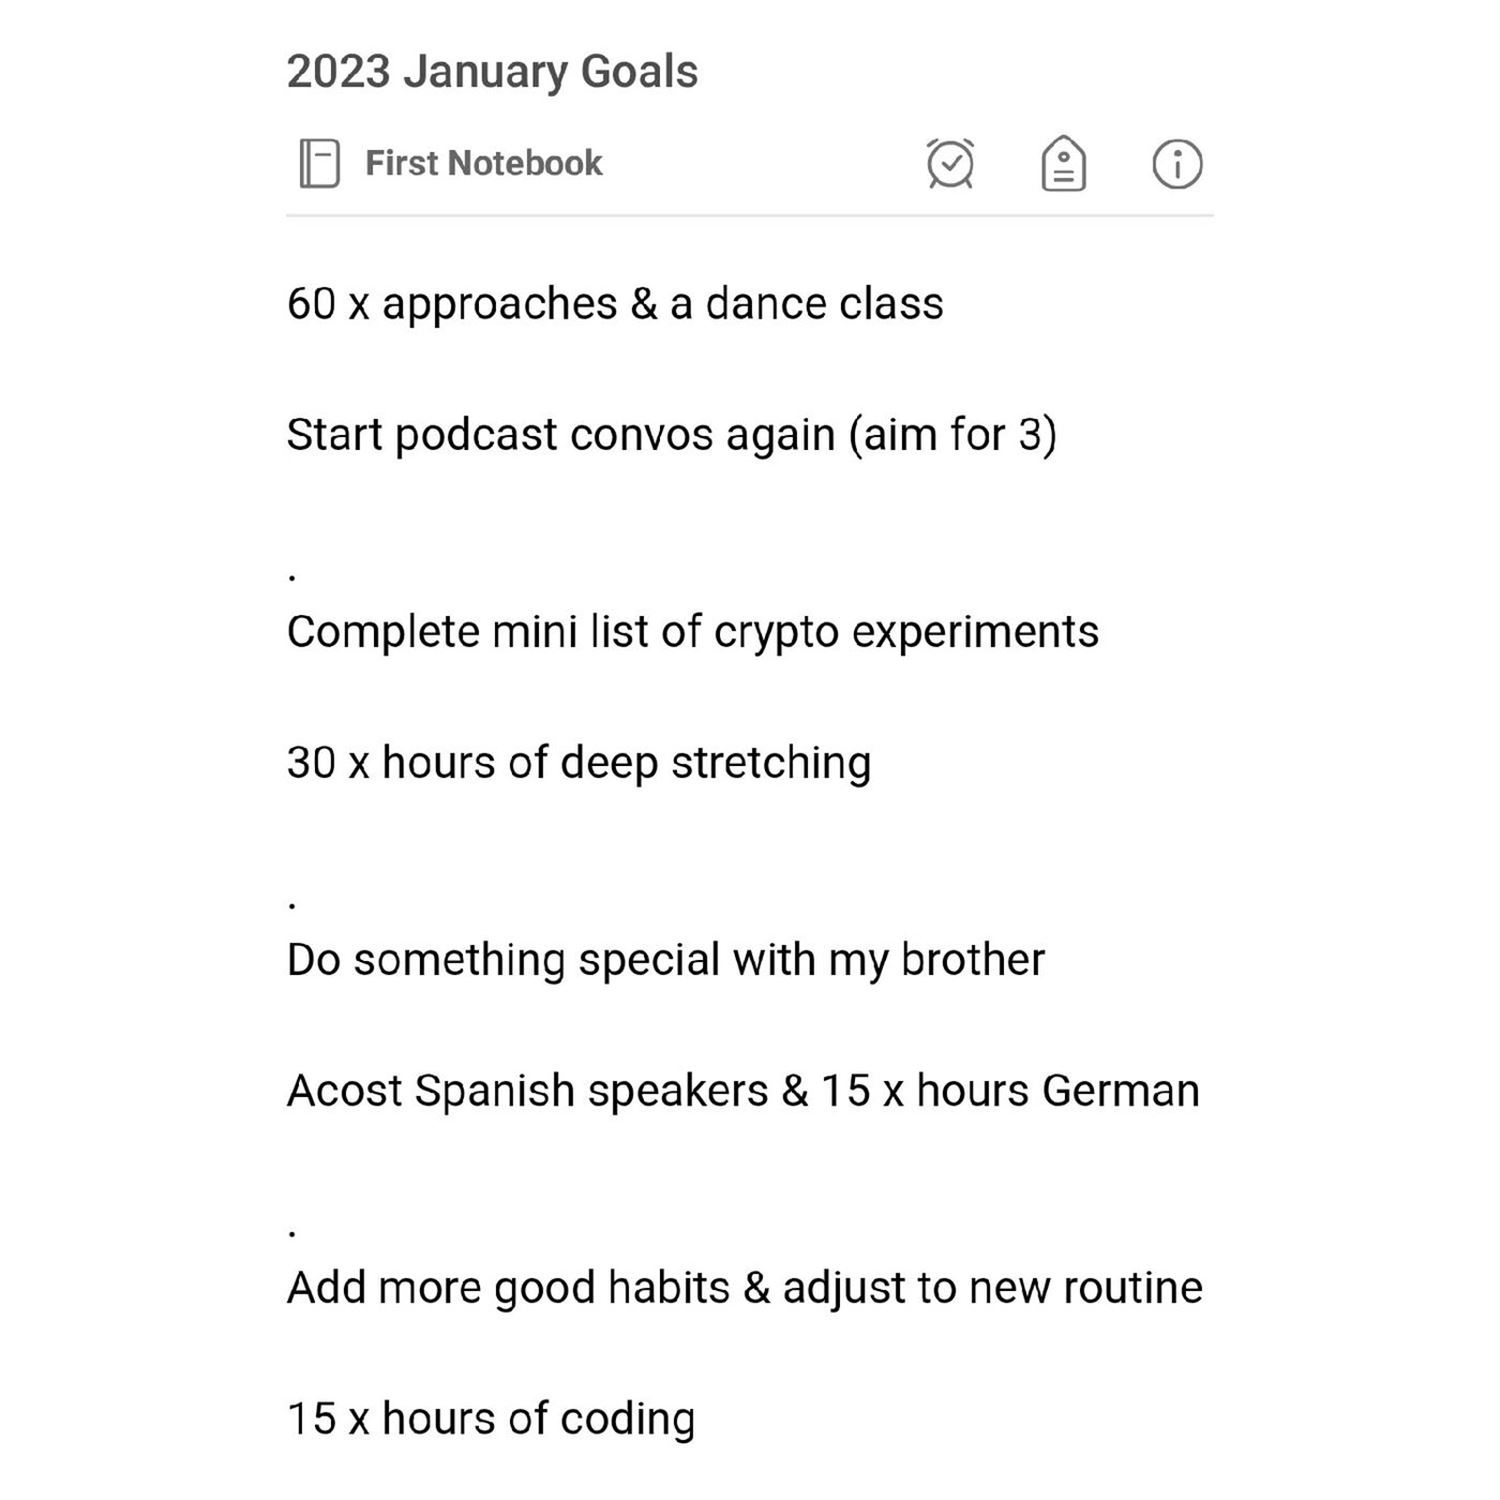 Kyrin's January Goals